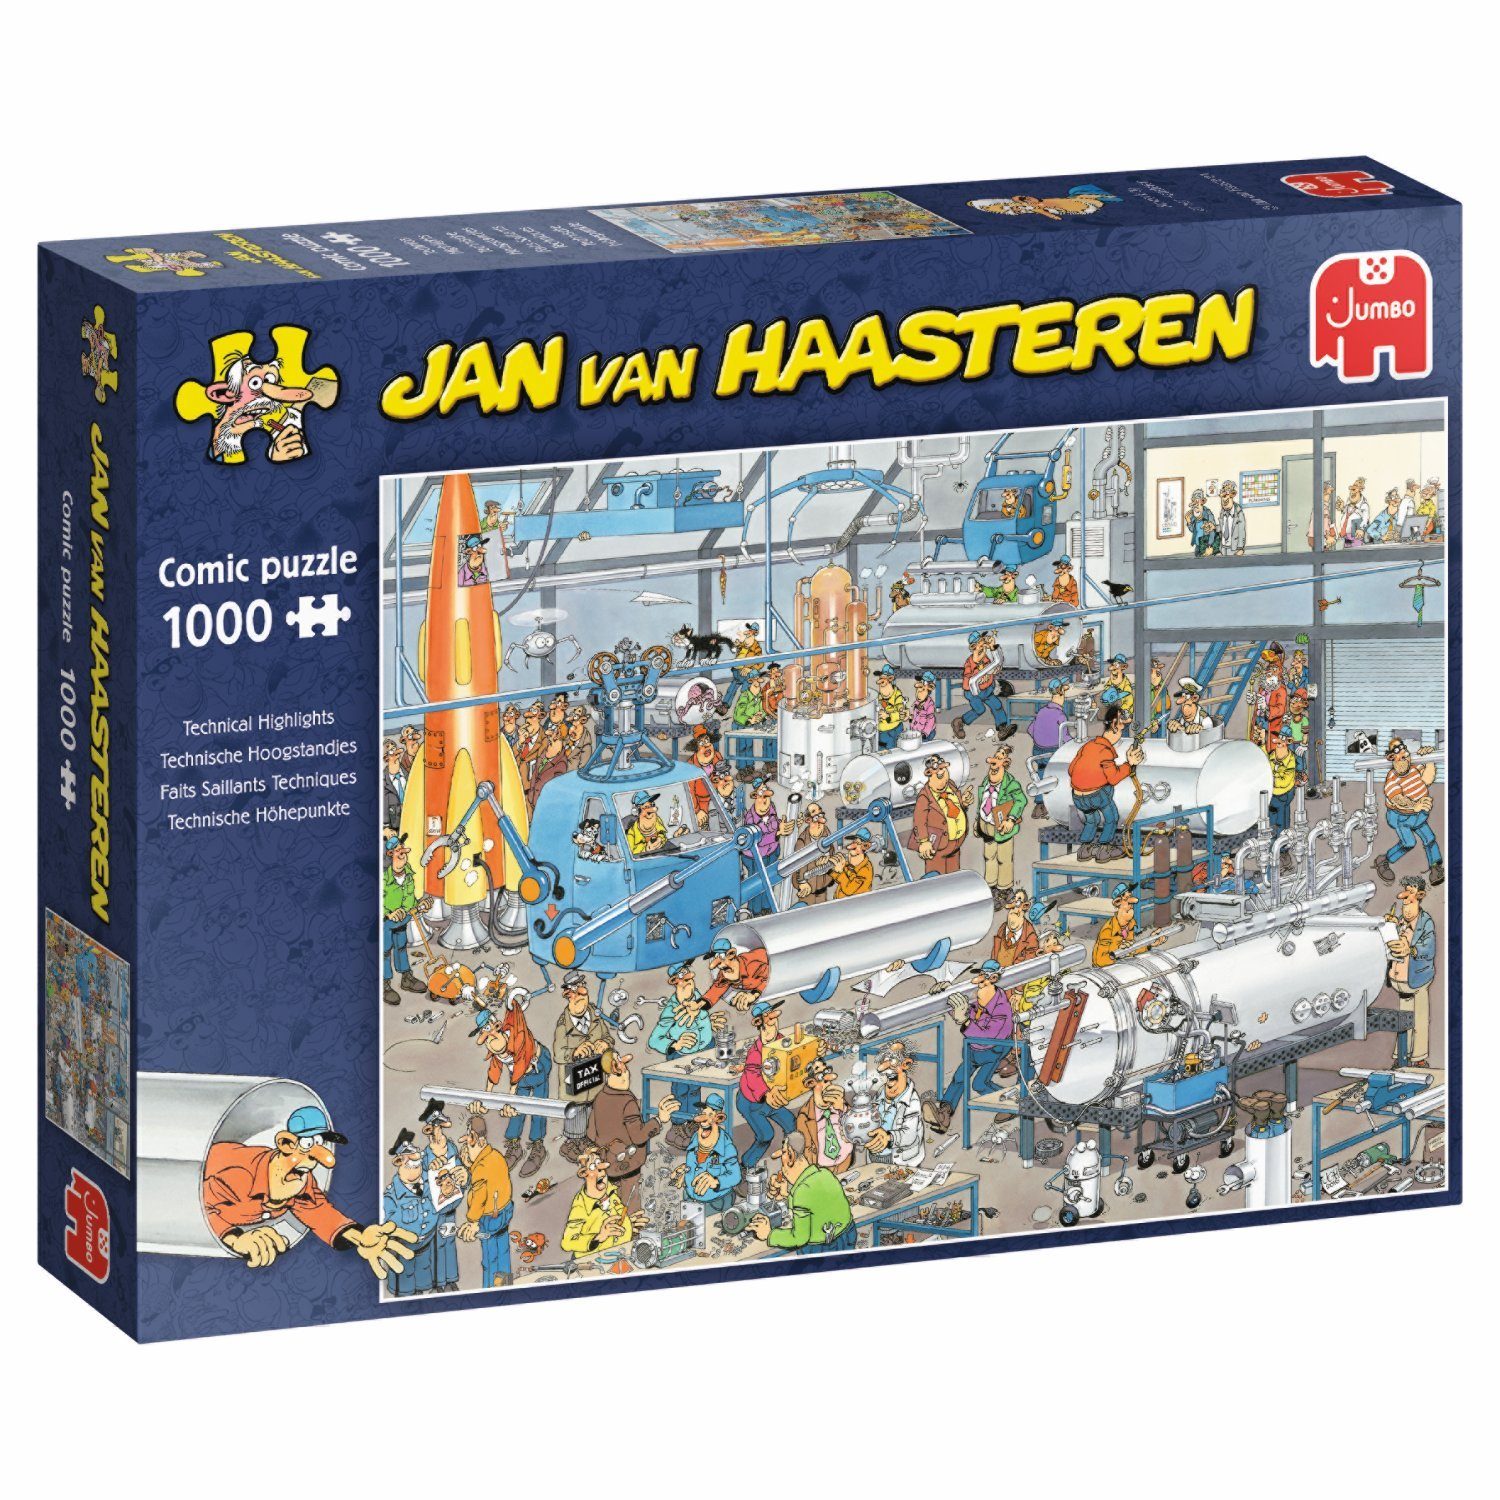 Jumbo Spiele Puzzle Jan van Haasteren Technische Höhepunkte, 1000 Puzzleteile